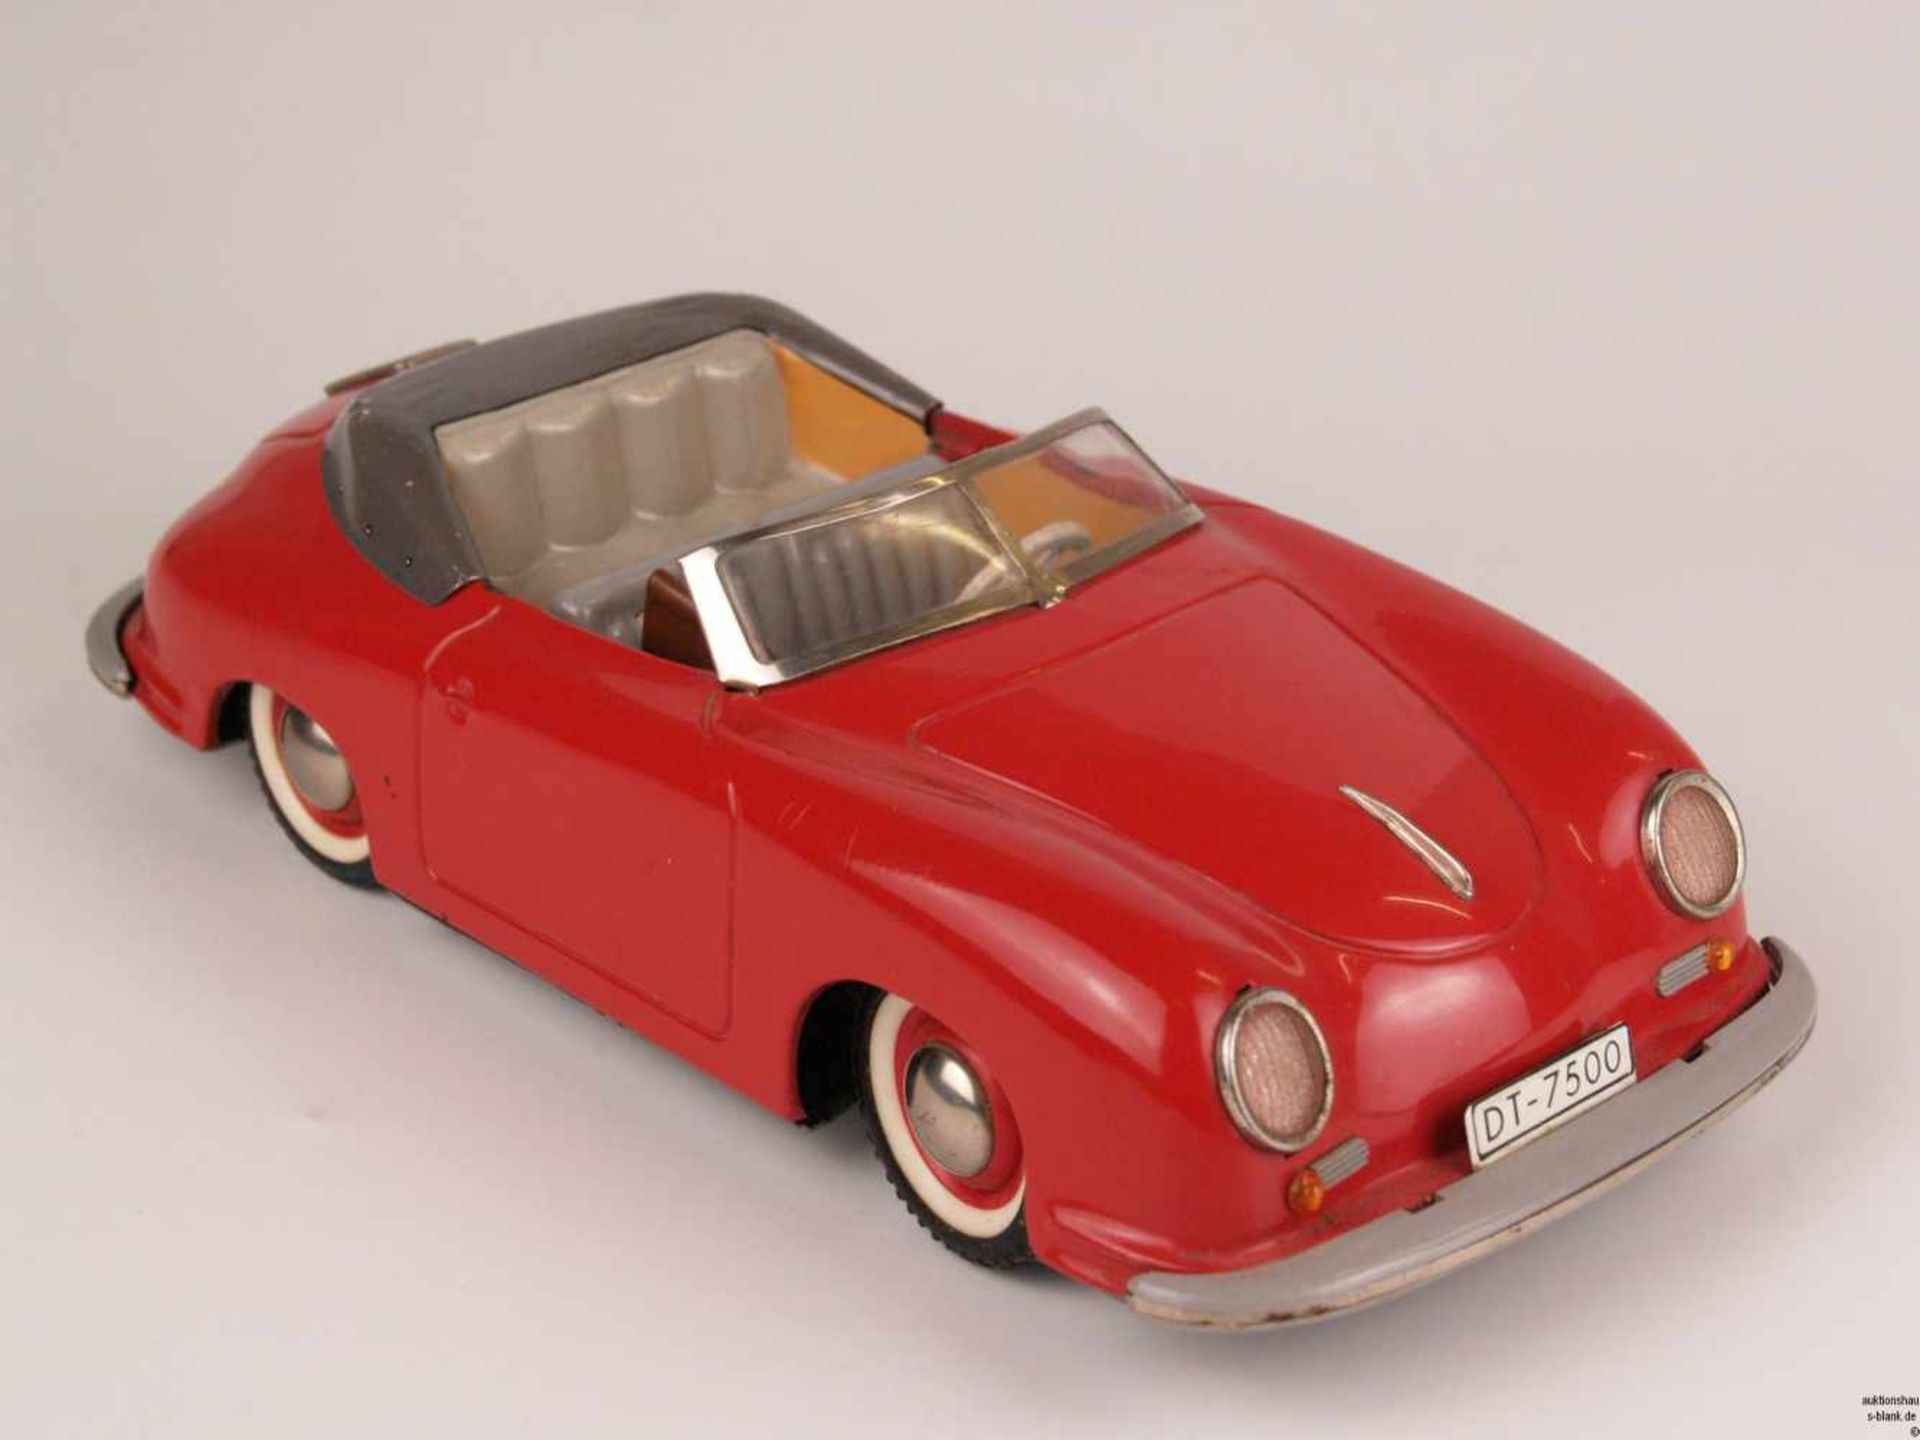 Blechauto - Distler, Belgien, "Electro Magic 7500", Porsche-Cabriolet 356, Blech, rot lackiert, - Bild 2 aus 9